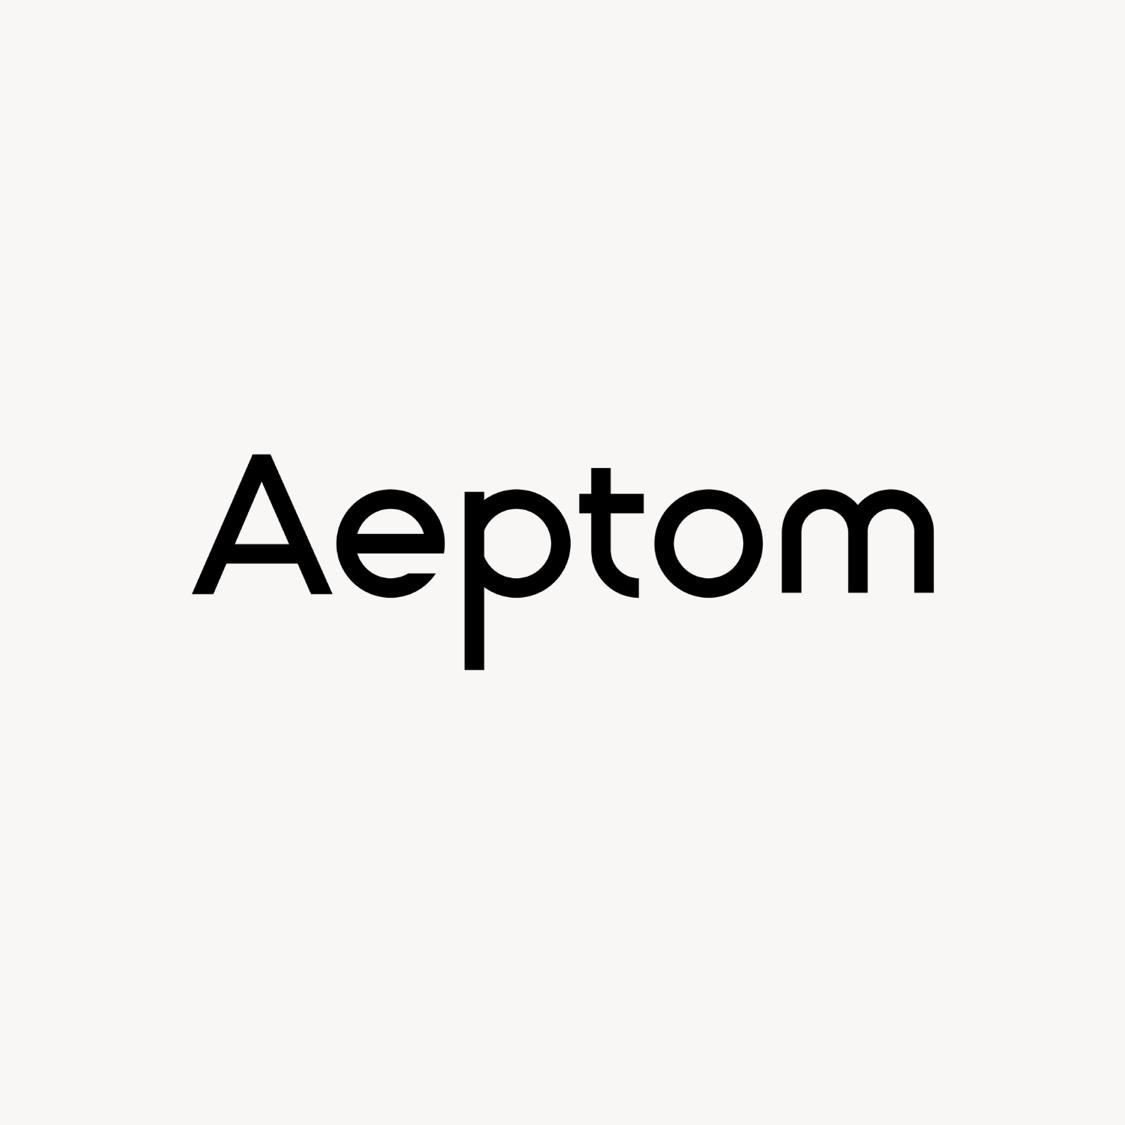 Aeptom's images